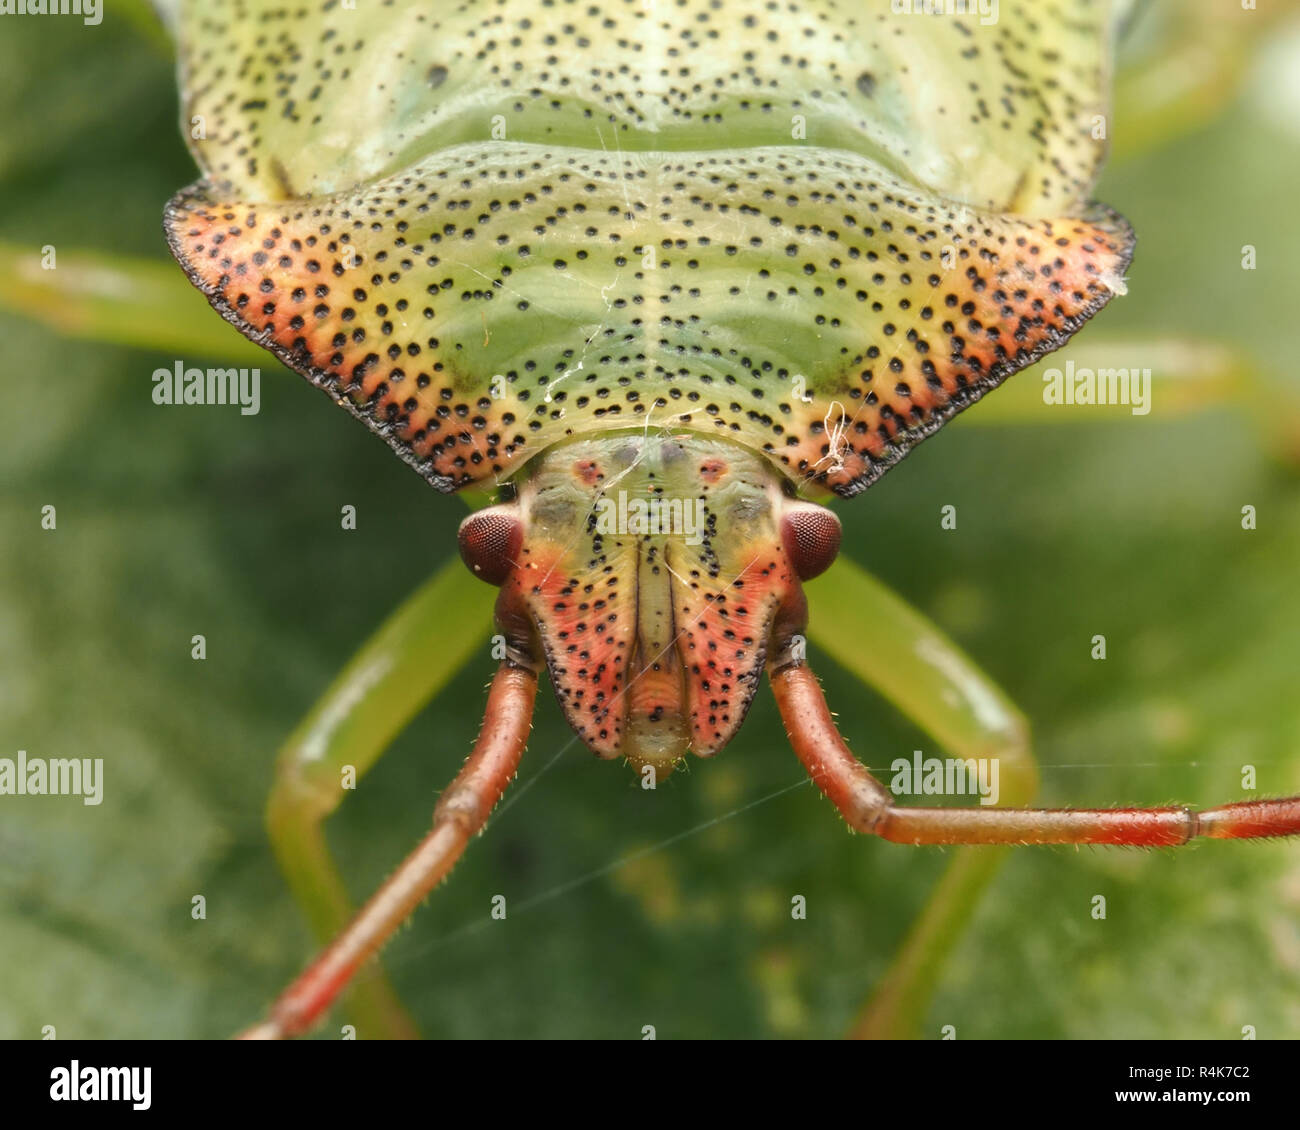 Close up frontale Ansicht von Weißdorn Shieldbug Nymphe (Acanthosoma haemorrhoidale) ruht auf Blatt. Tipperary, Irland Stockfoto